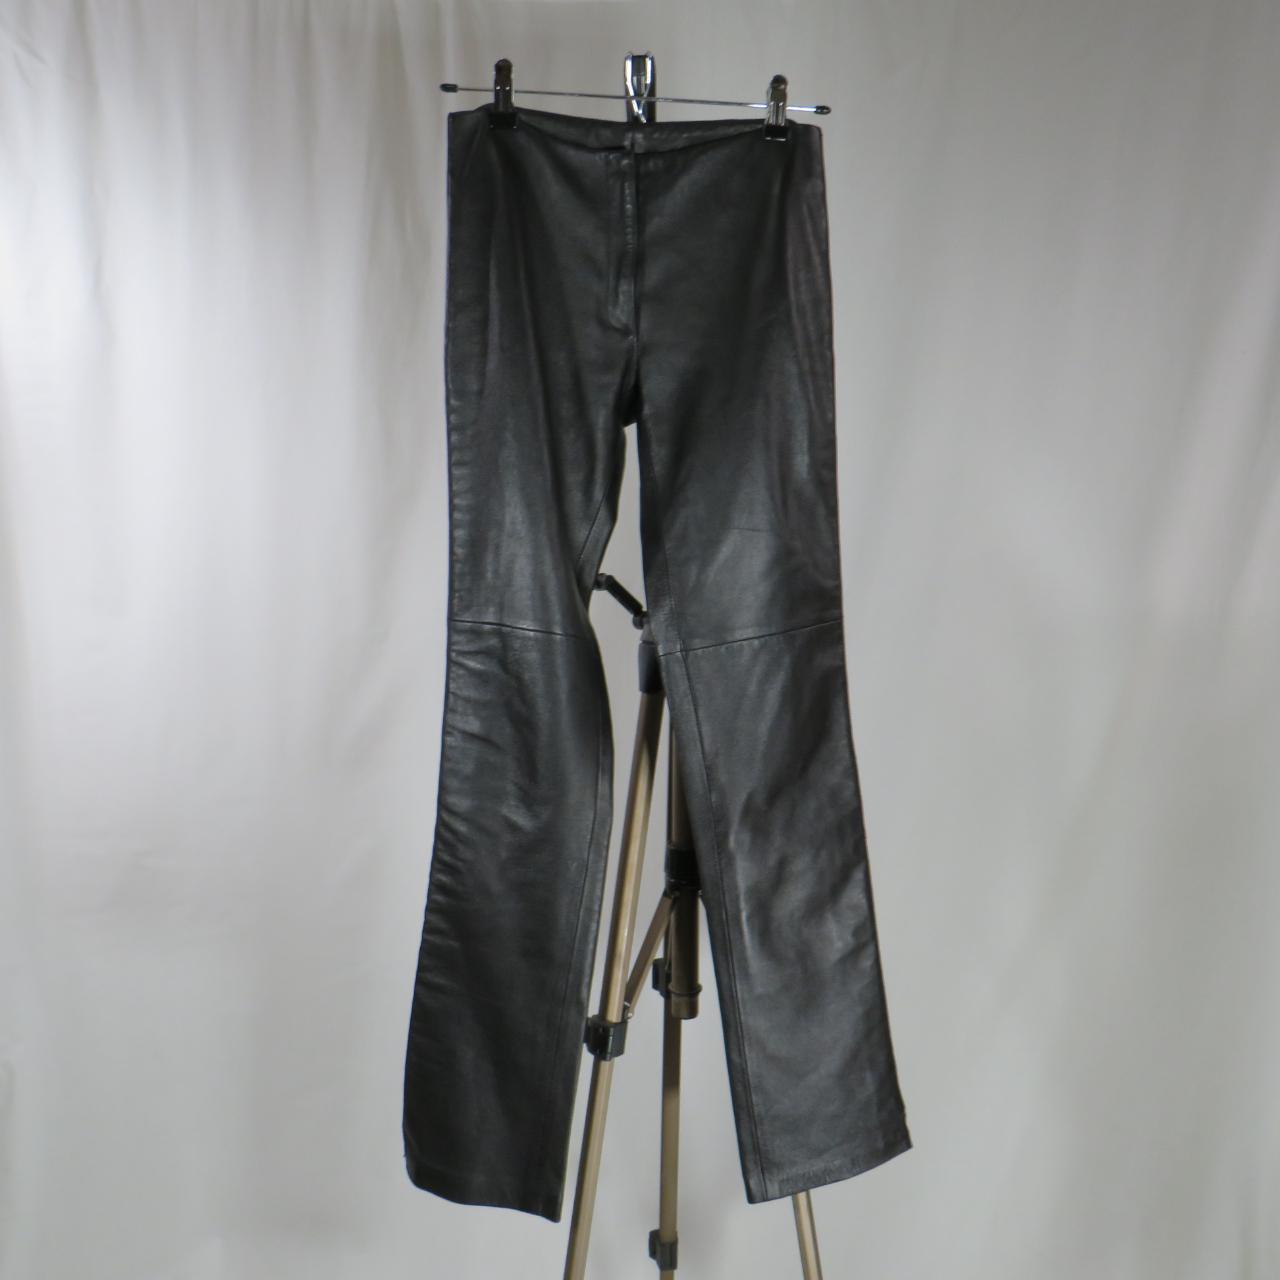 Rare Bebe black leather pants. Outsides of pant legs... - Depop